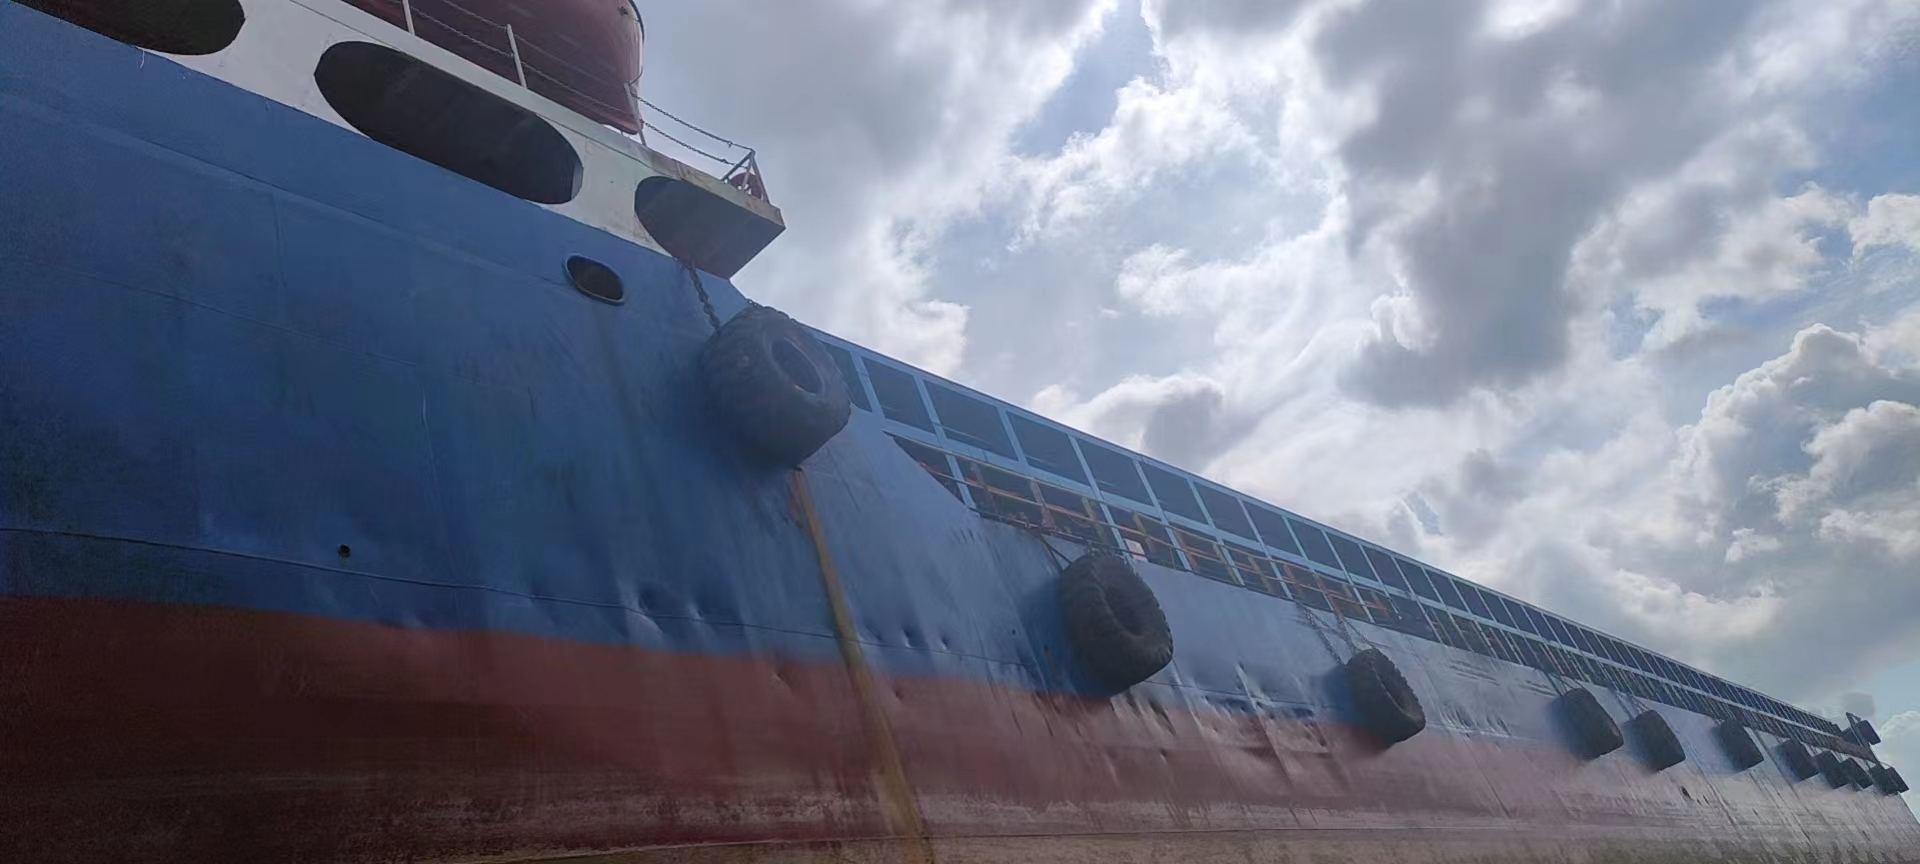 转：2021-12200吨 甲板货船